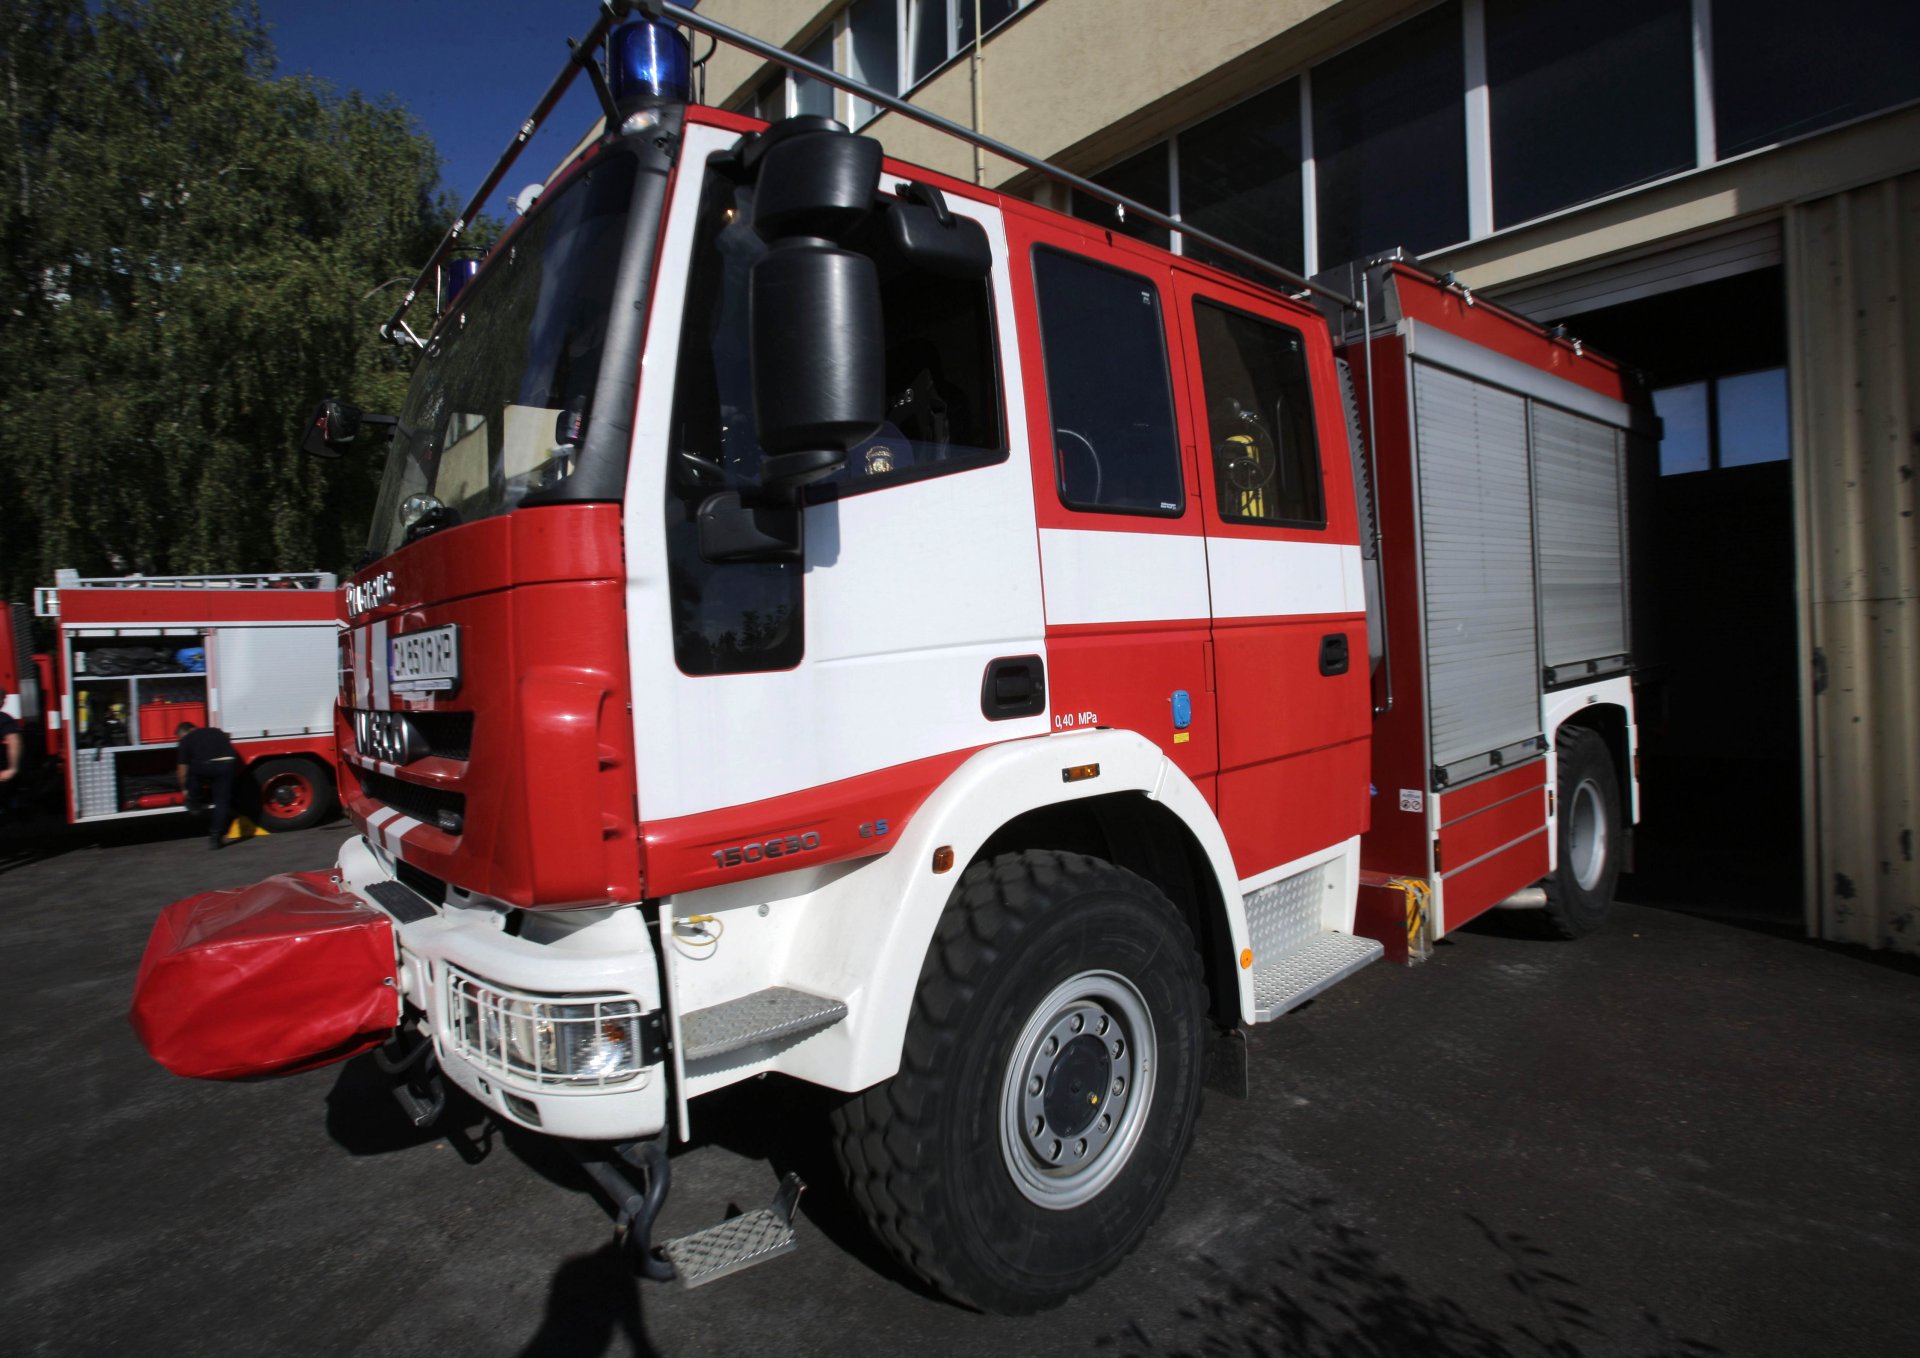 Пожарникари от Сливен извадиха мъж от близо 6-метров кладенец.Спасителната операция